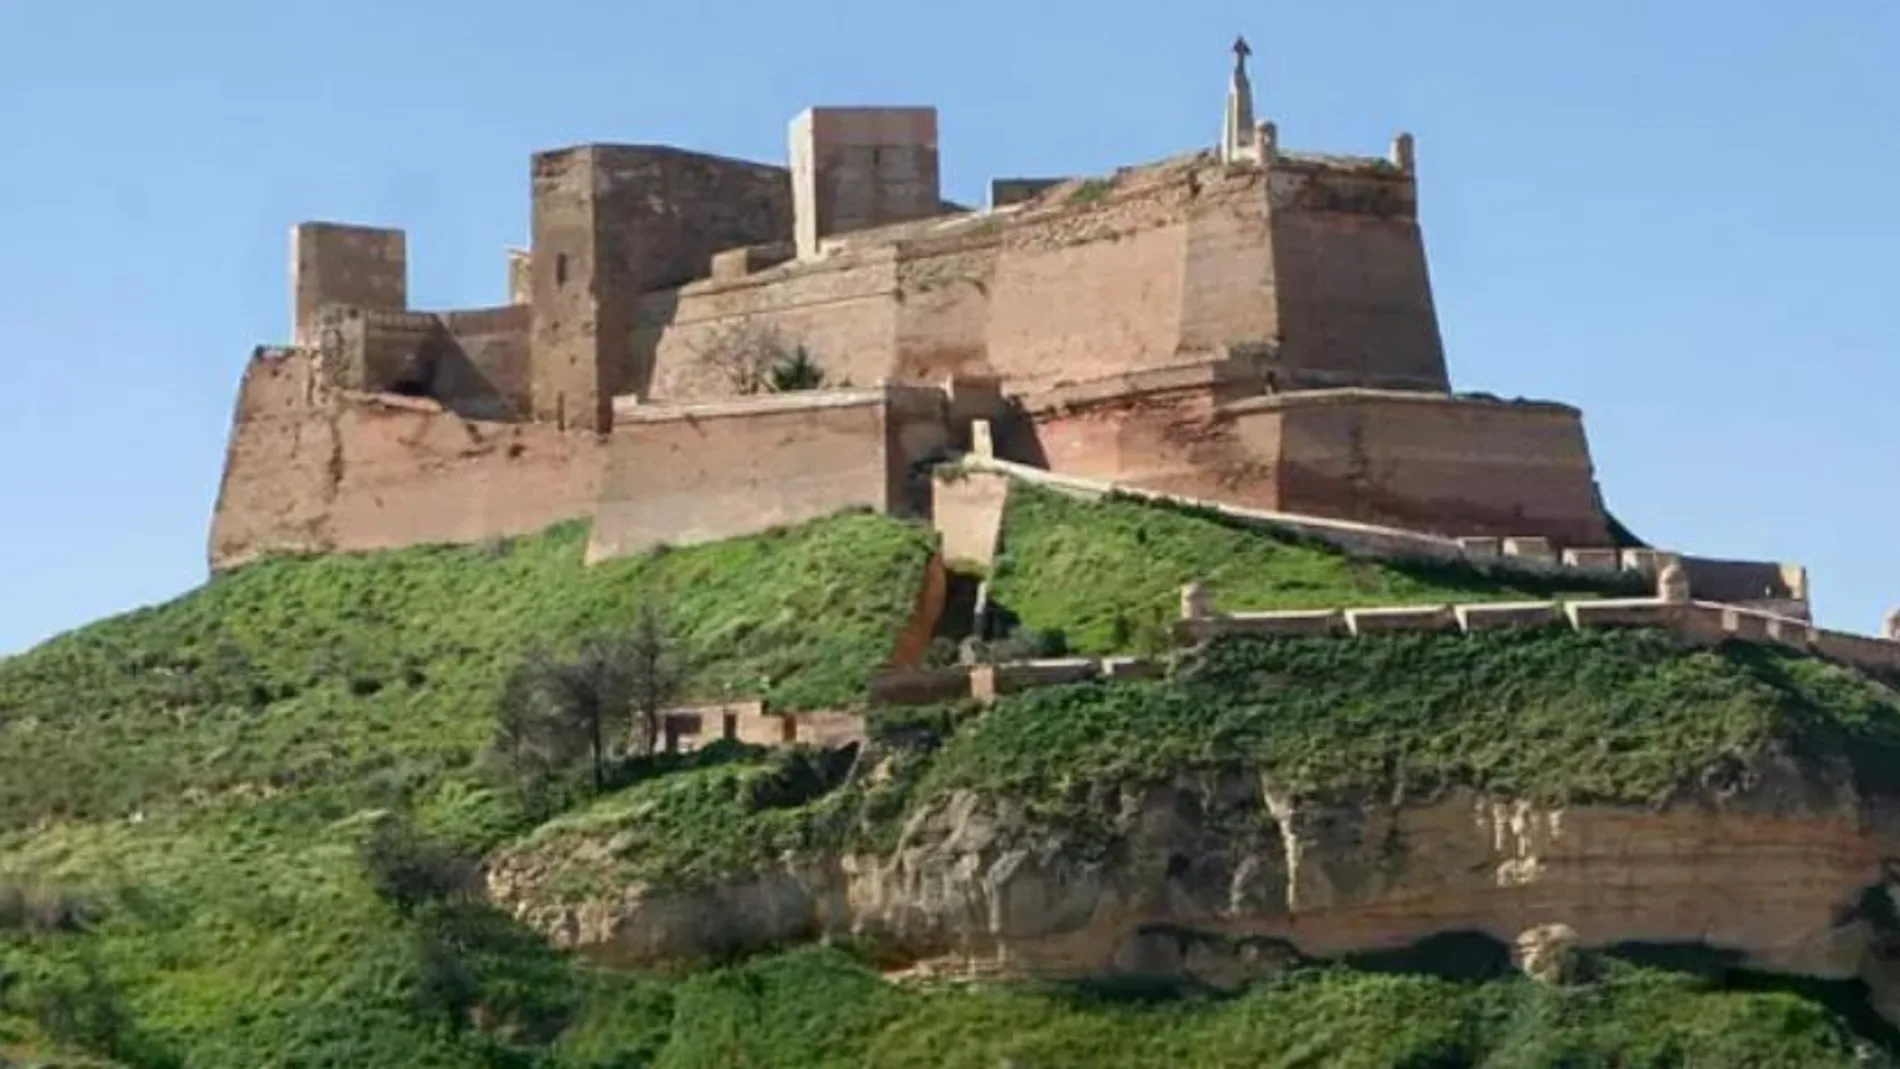 El castillo de Monzón es una fortaleza de los templarios que escondió la única reliquia del Cid Campeador y es considerado Bien de Interés Cultural